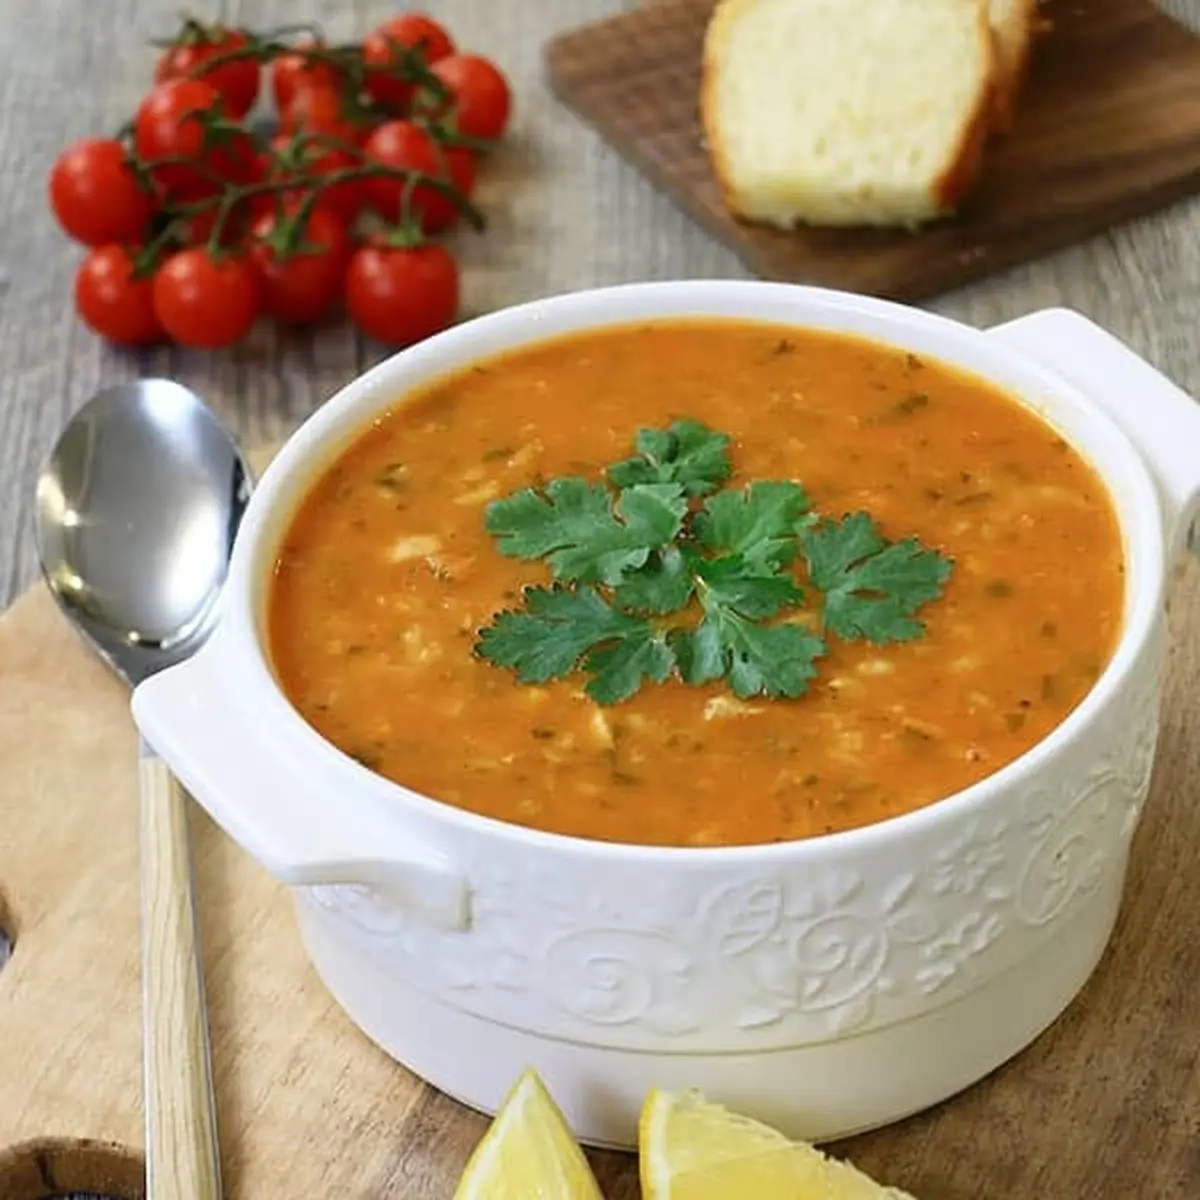 با این روش سوپ جو رو مثل سرآشپزها درست کن! | طرز تهیه سوپ جو خانگی به روش رستورانی! + ویدئو